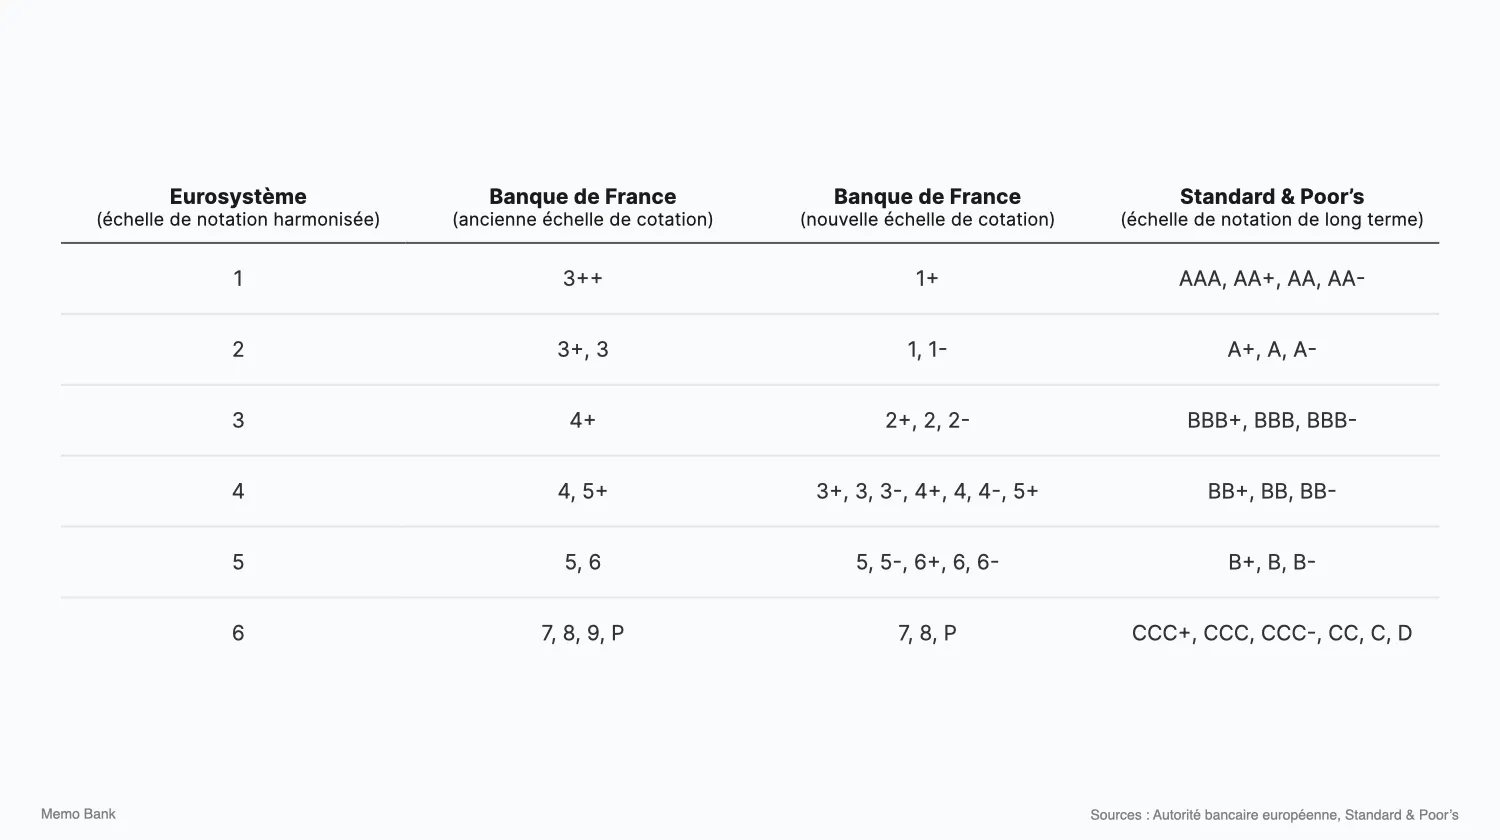 Les changements dûs à la nouvelle échelle de cotation de la Banque de France, pour les entreprises